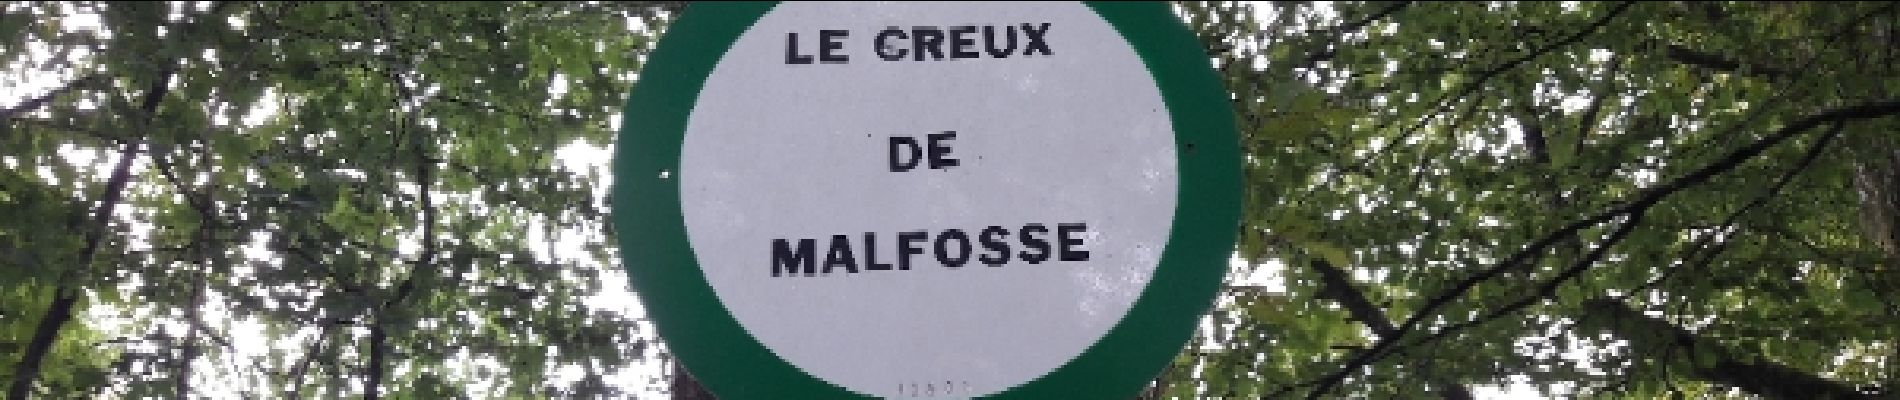 Point of interest Badevel - Le Creux de Malefosse - Photo